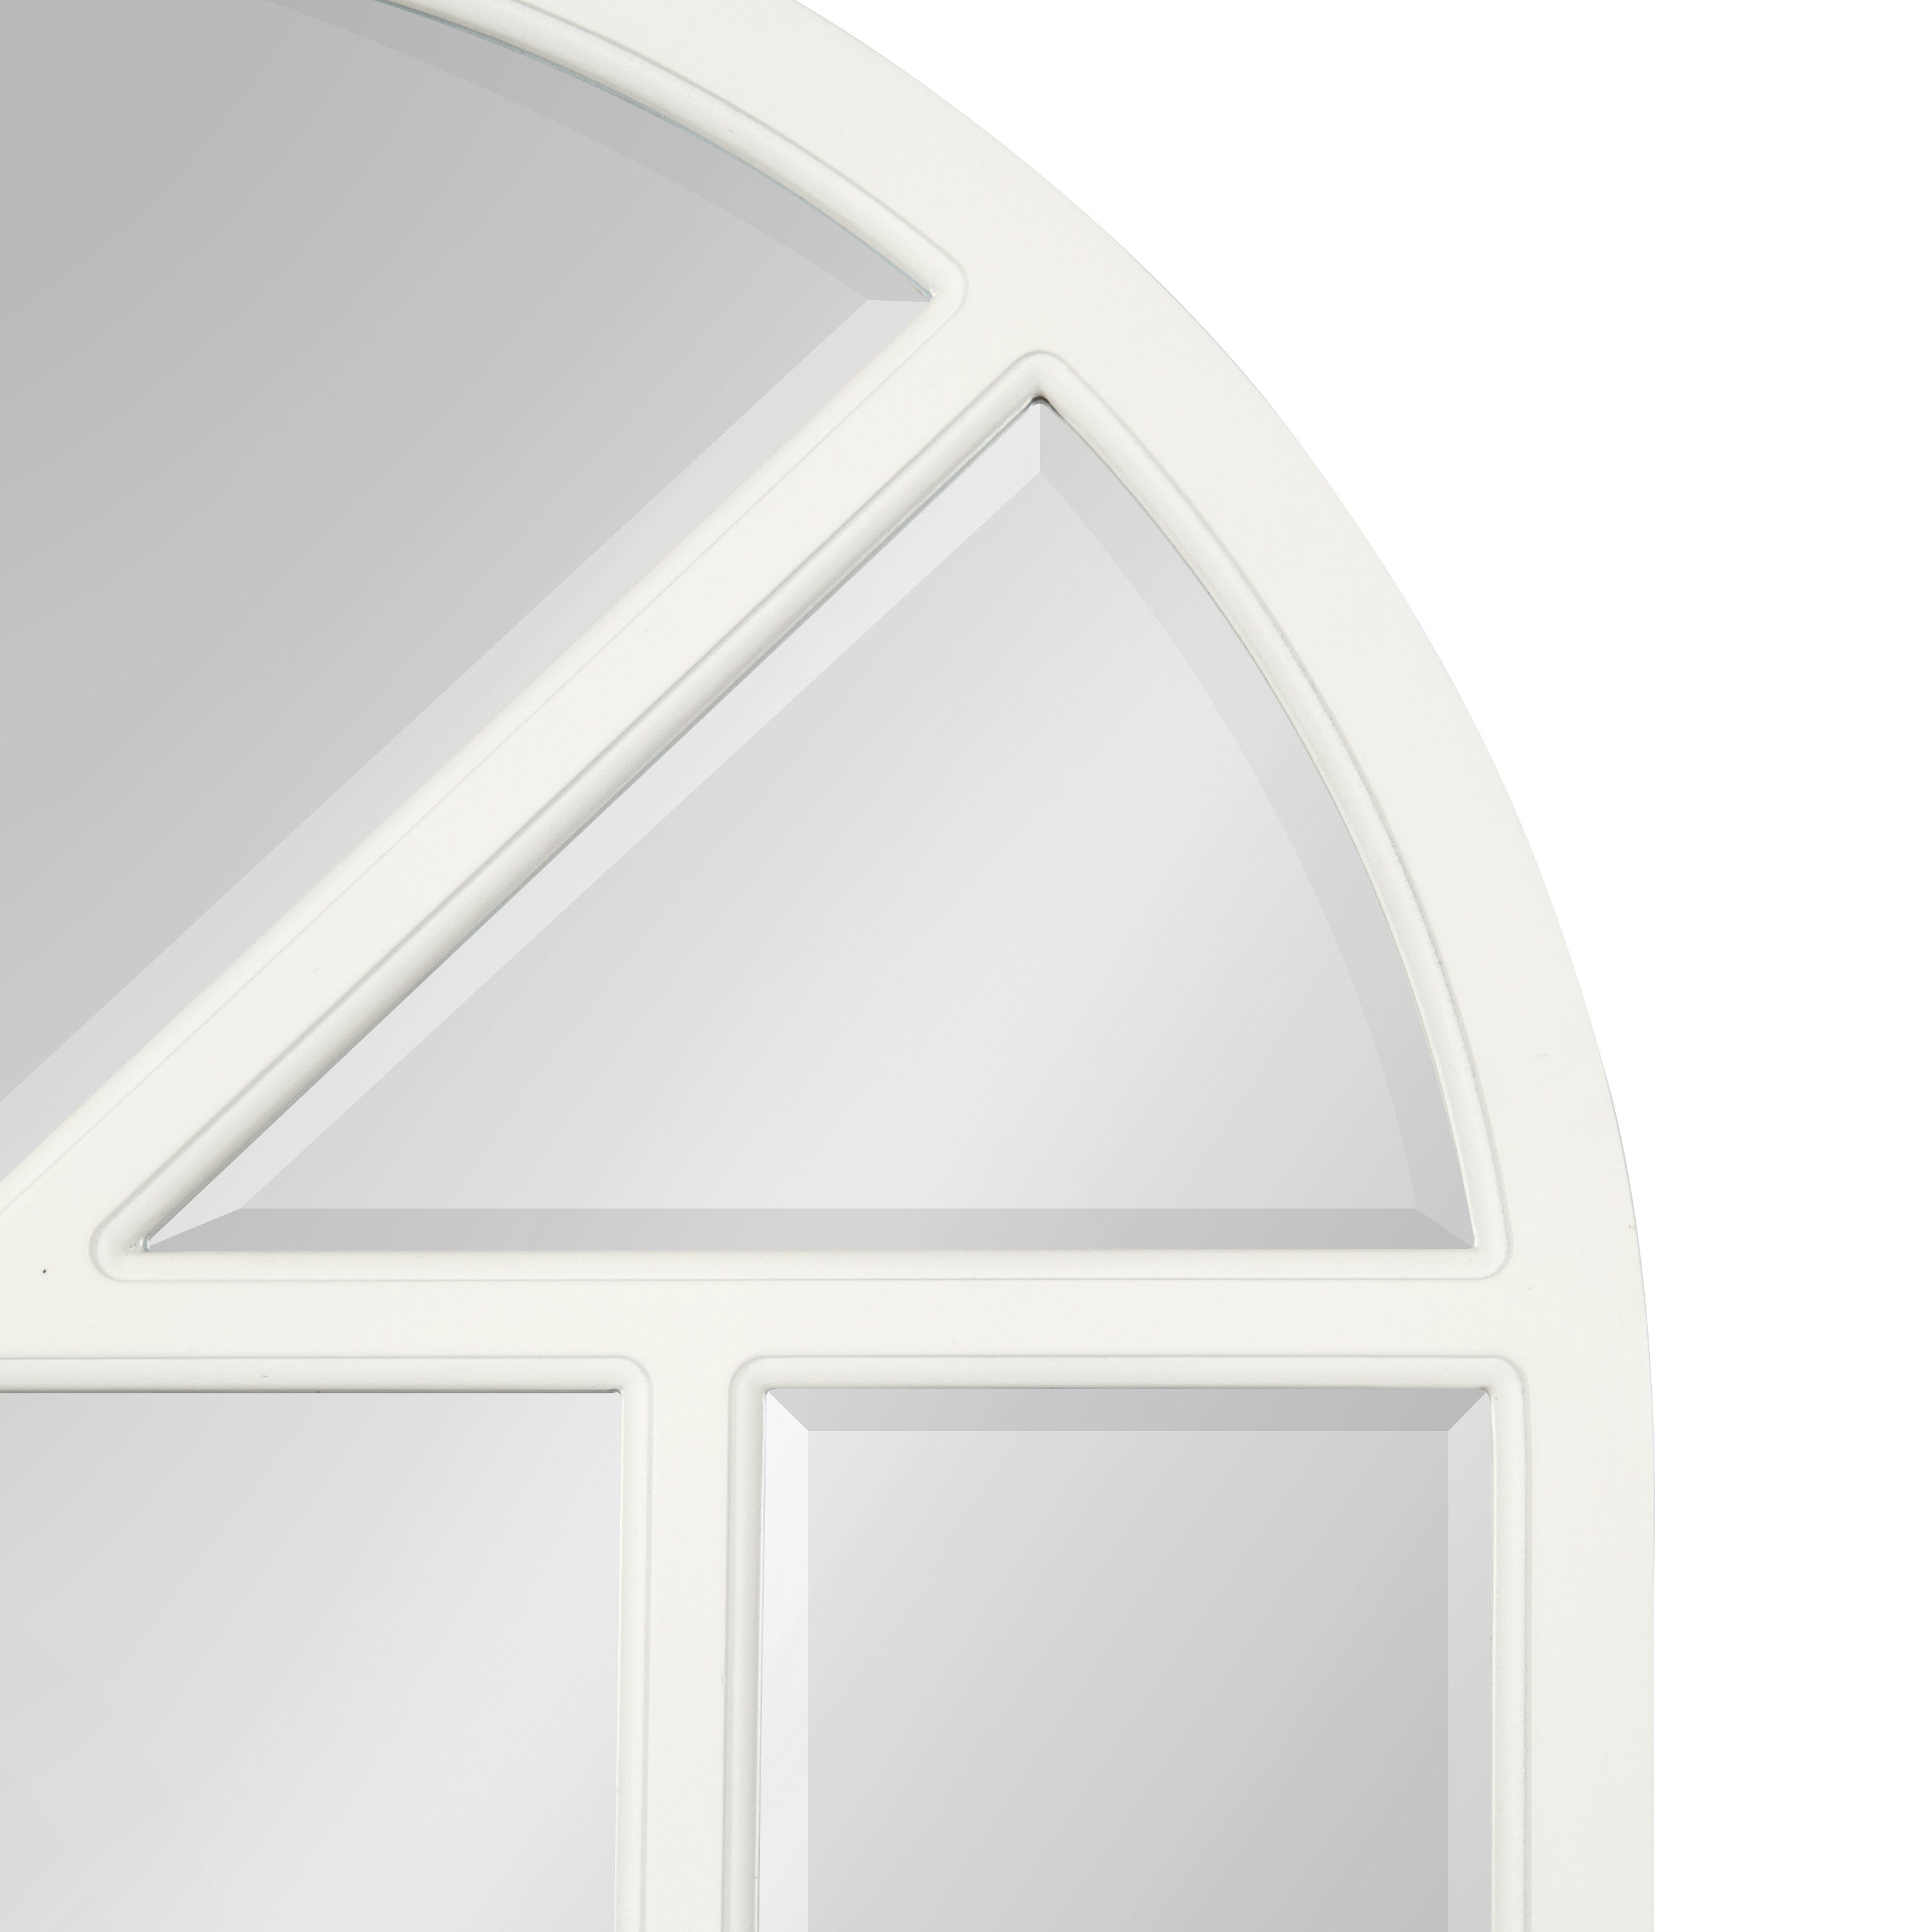 Hogan Arch Windowpane Framed Wall Mirror